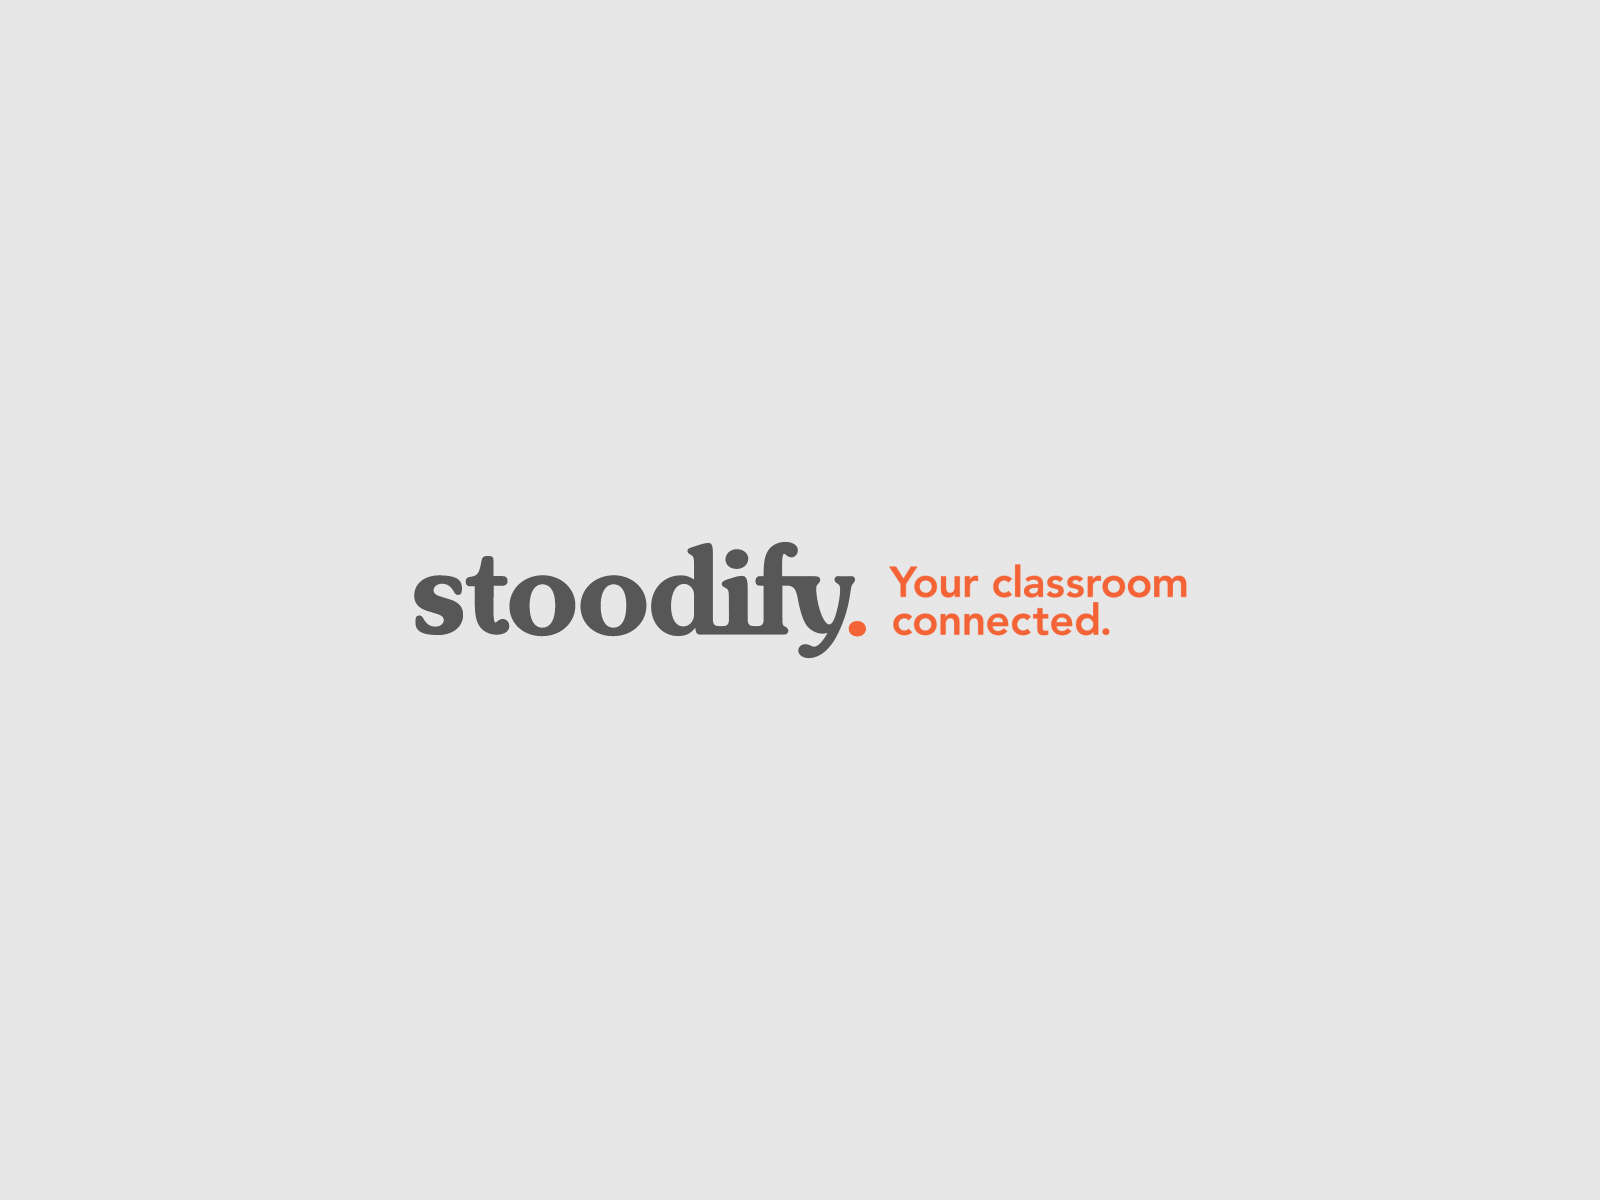 Stoodify animated logo